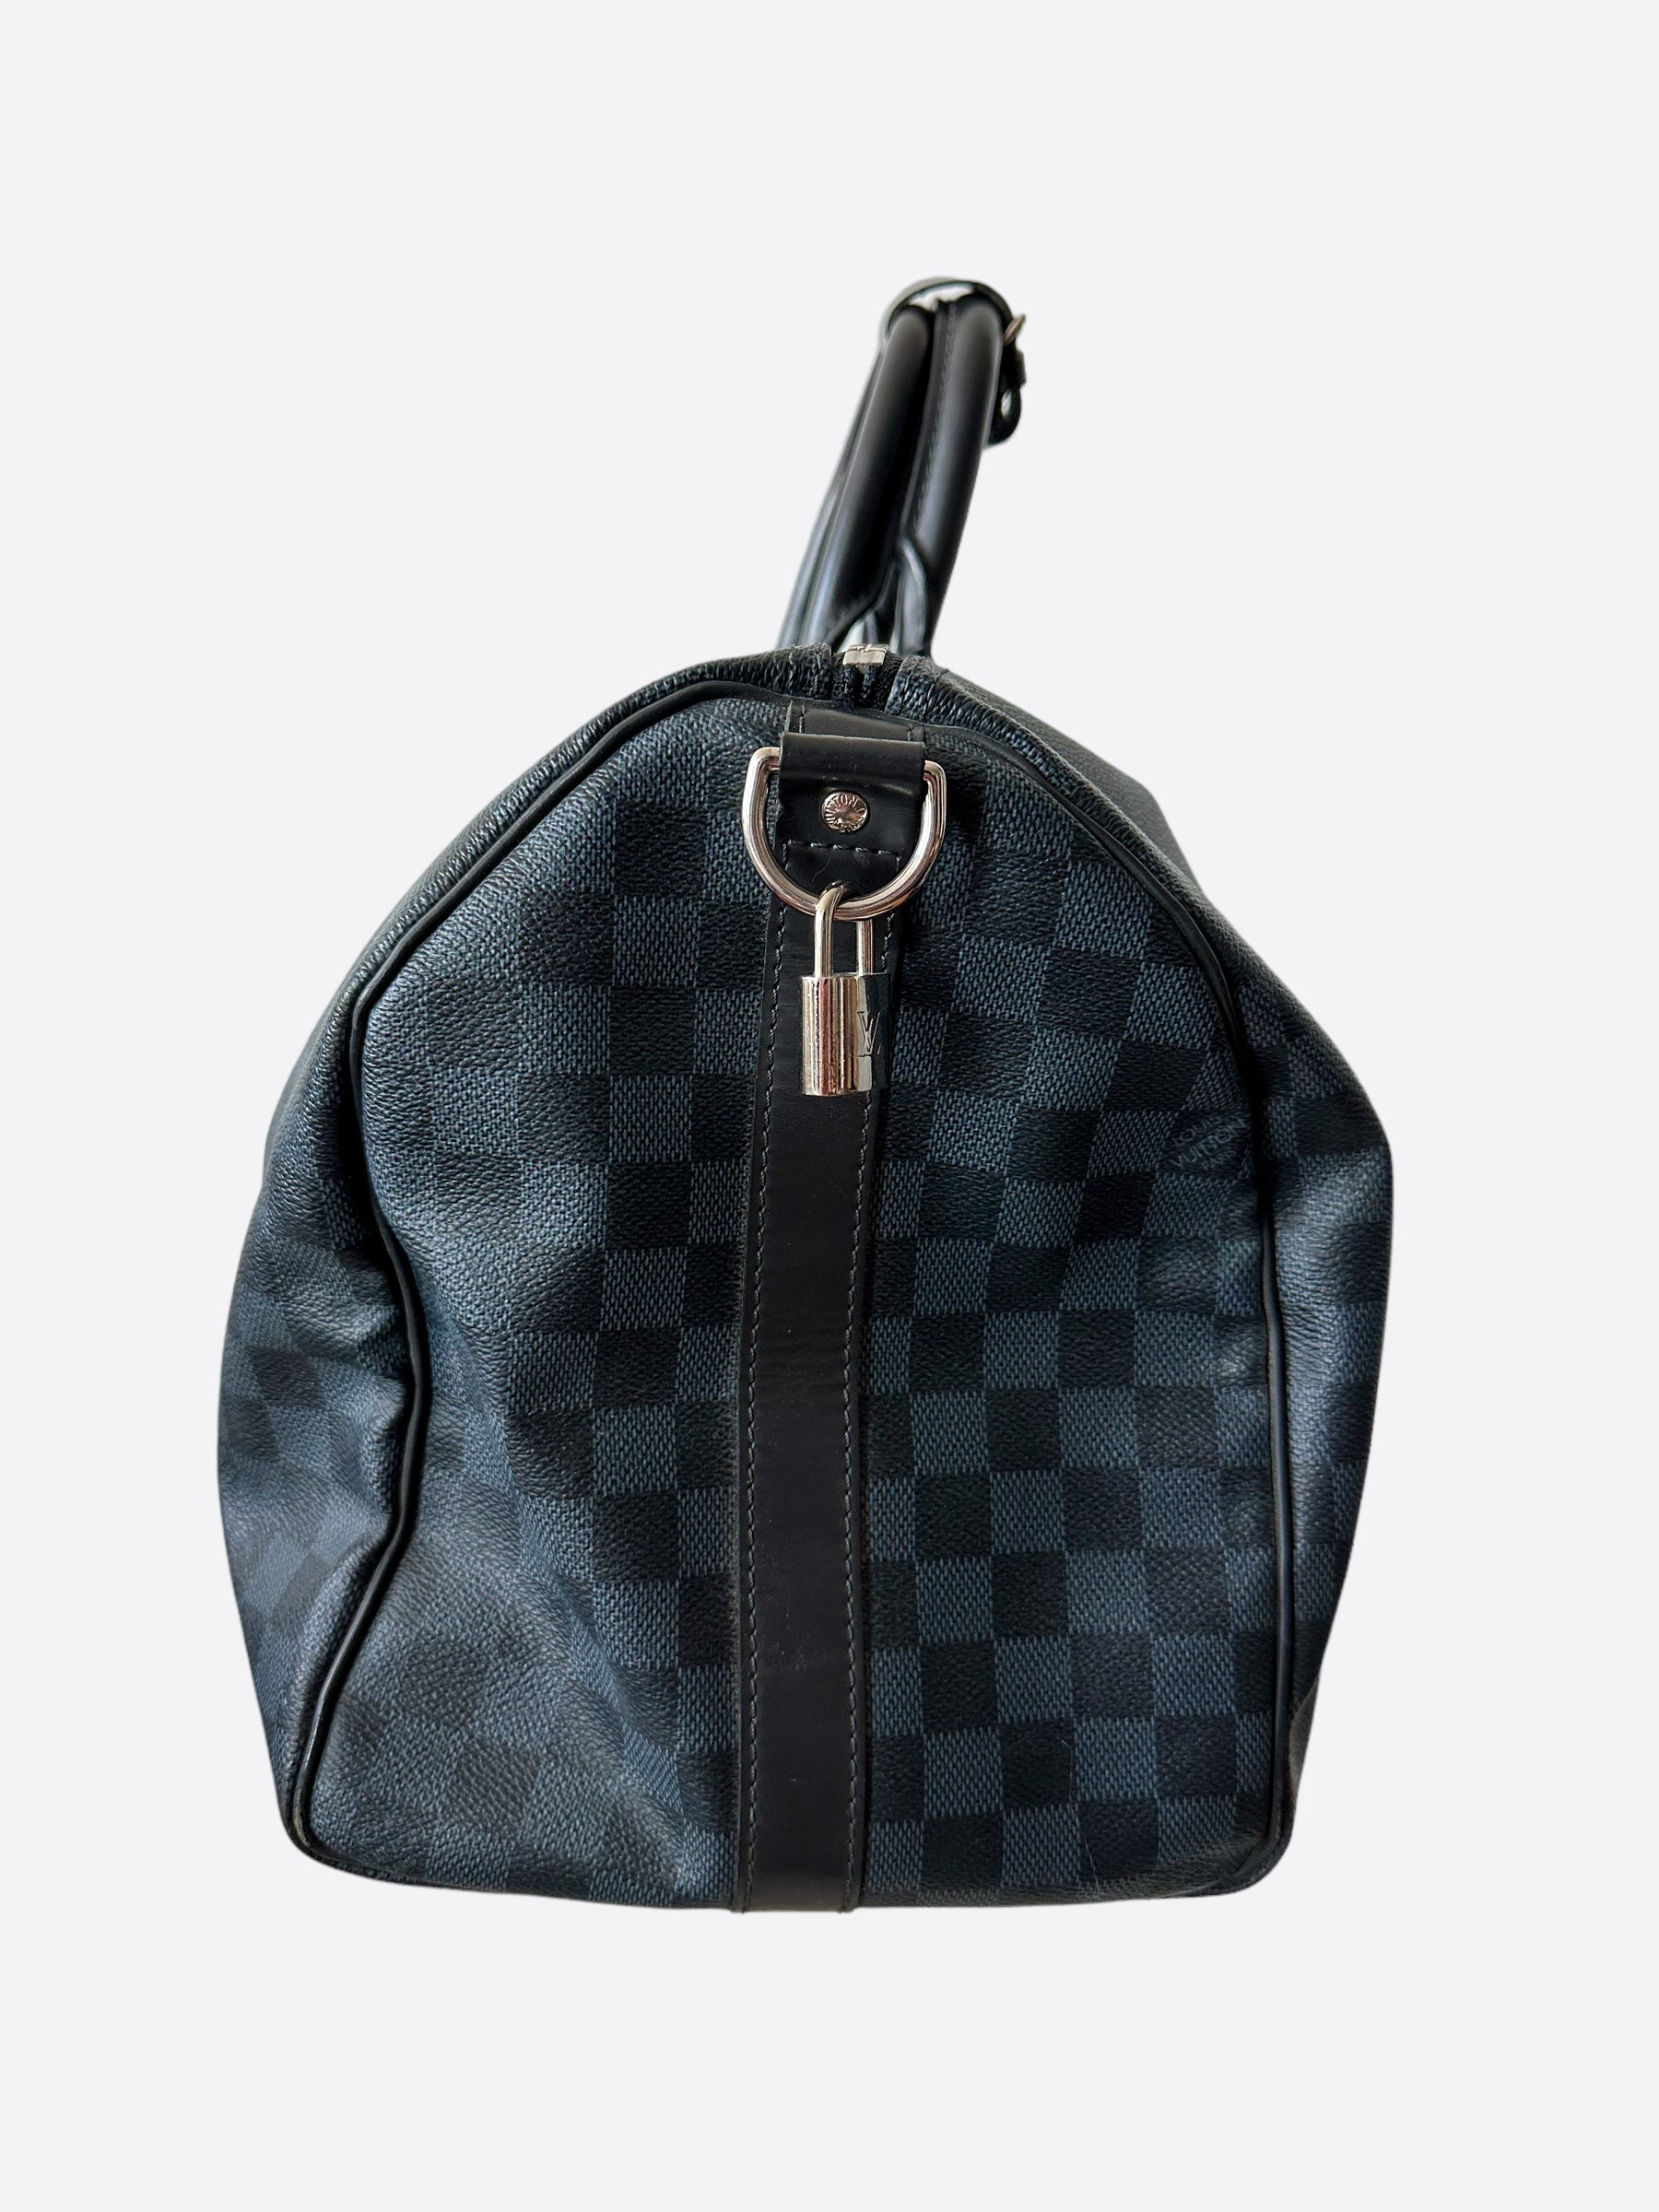 Louis Vuitton Bag Keepall Bandouliere 45 Damier Cobalt | 3D model